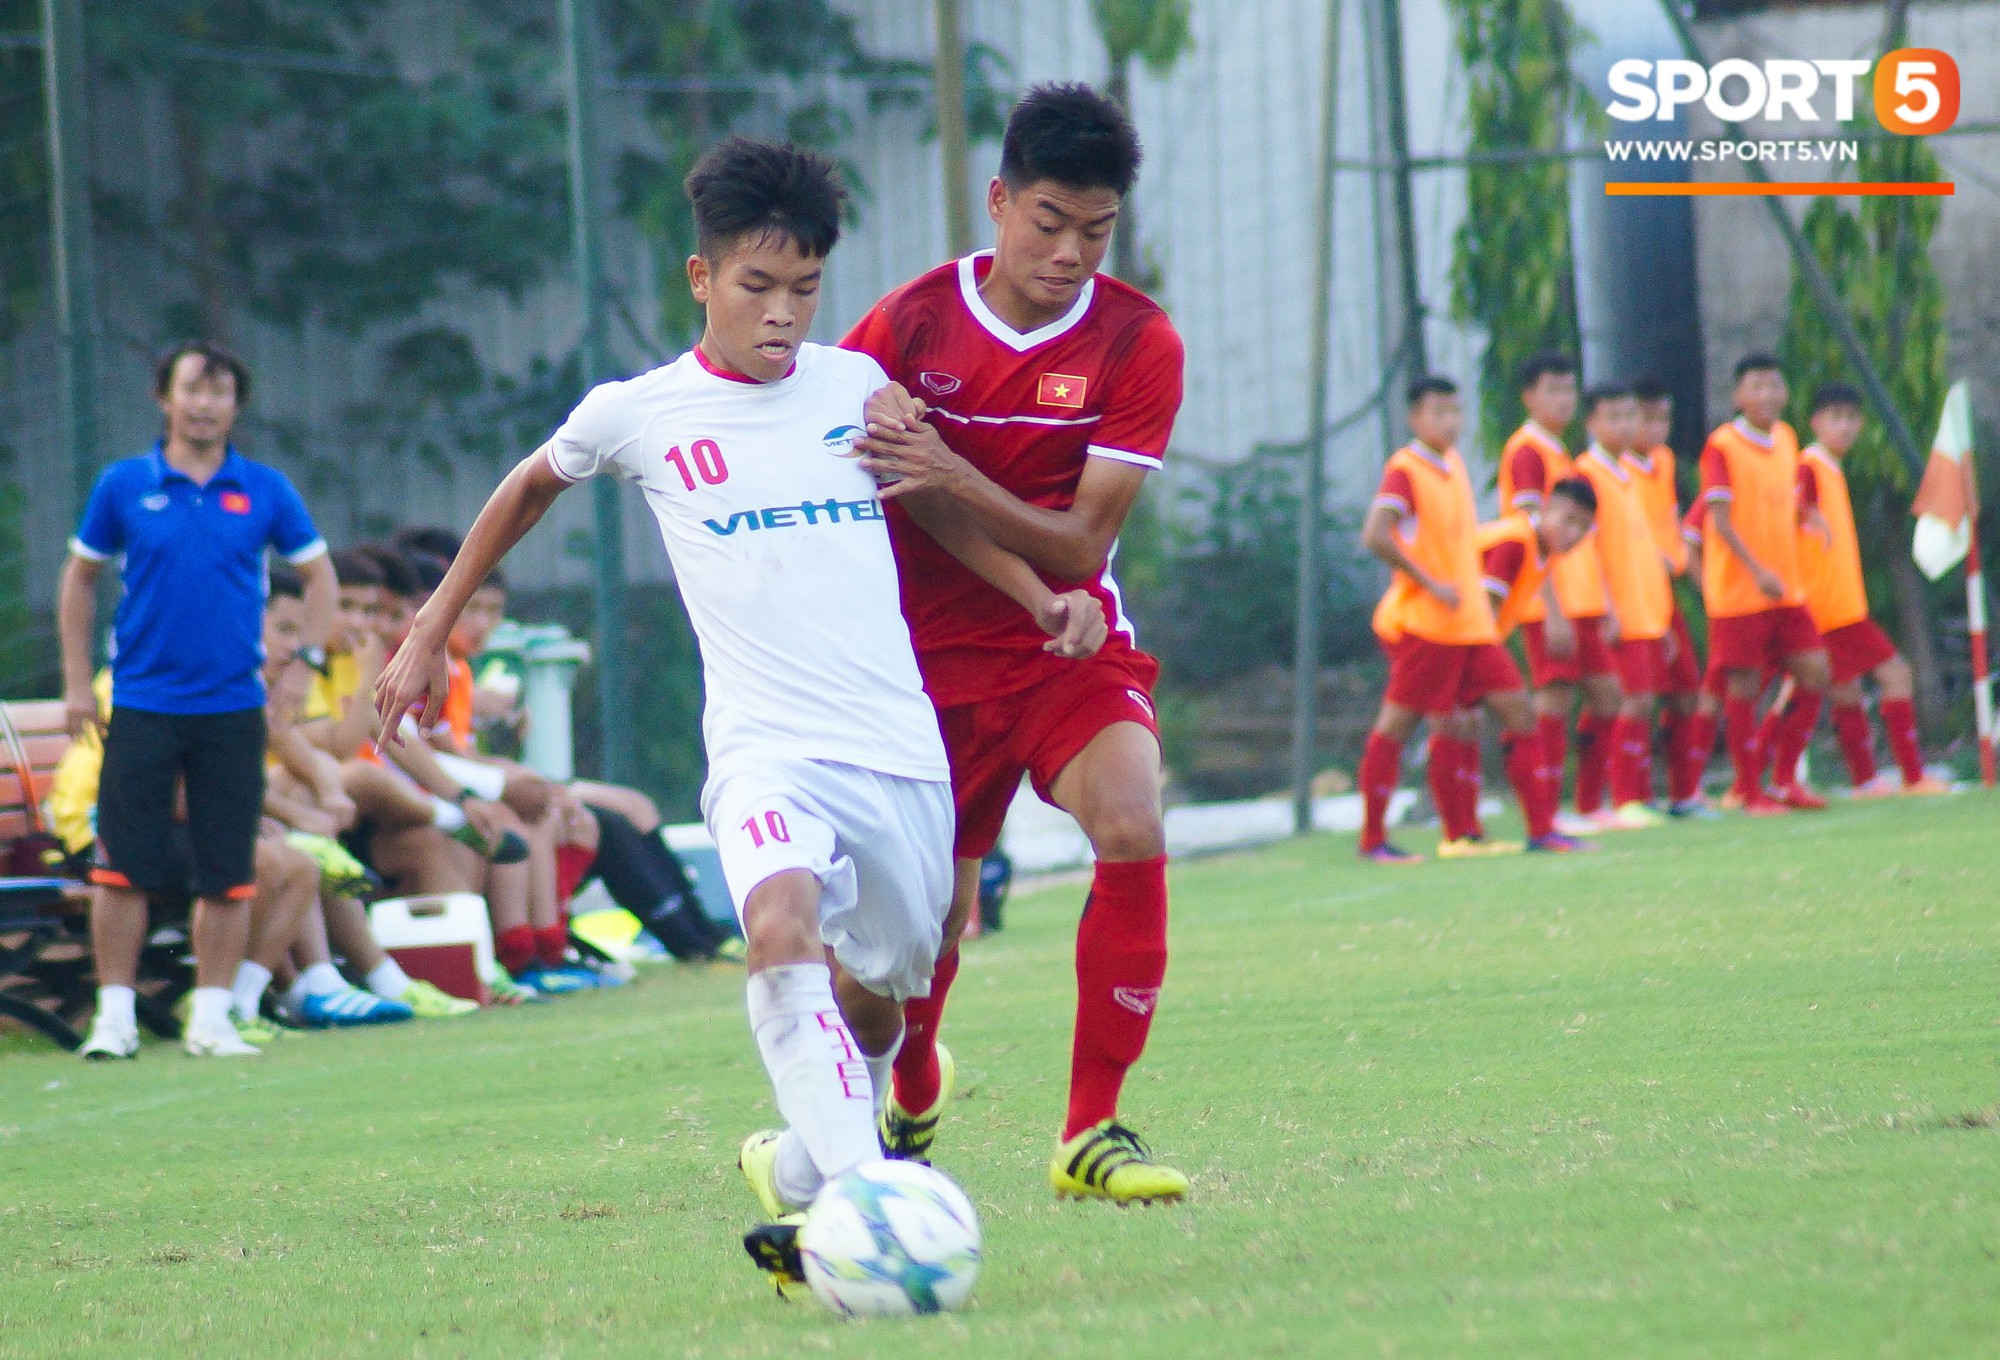 Thất bại trước đàn em của Trọng Đại, U16 Việt Nam vẫn được khen ngợi - Ảnh 1.